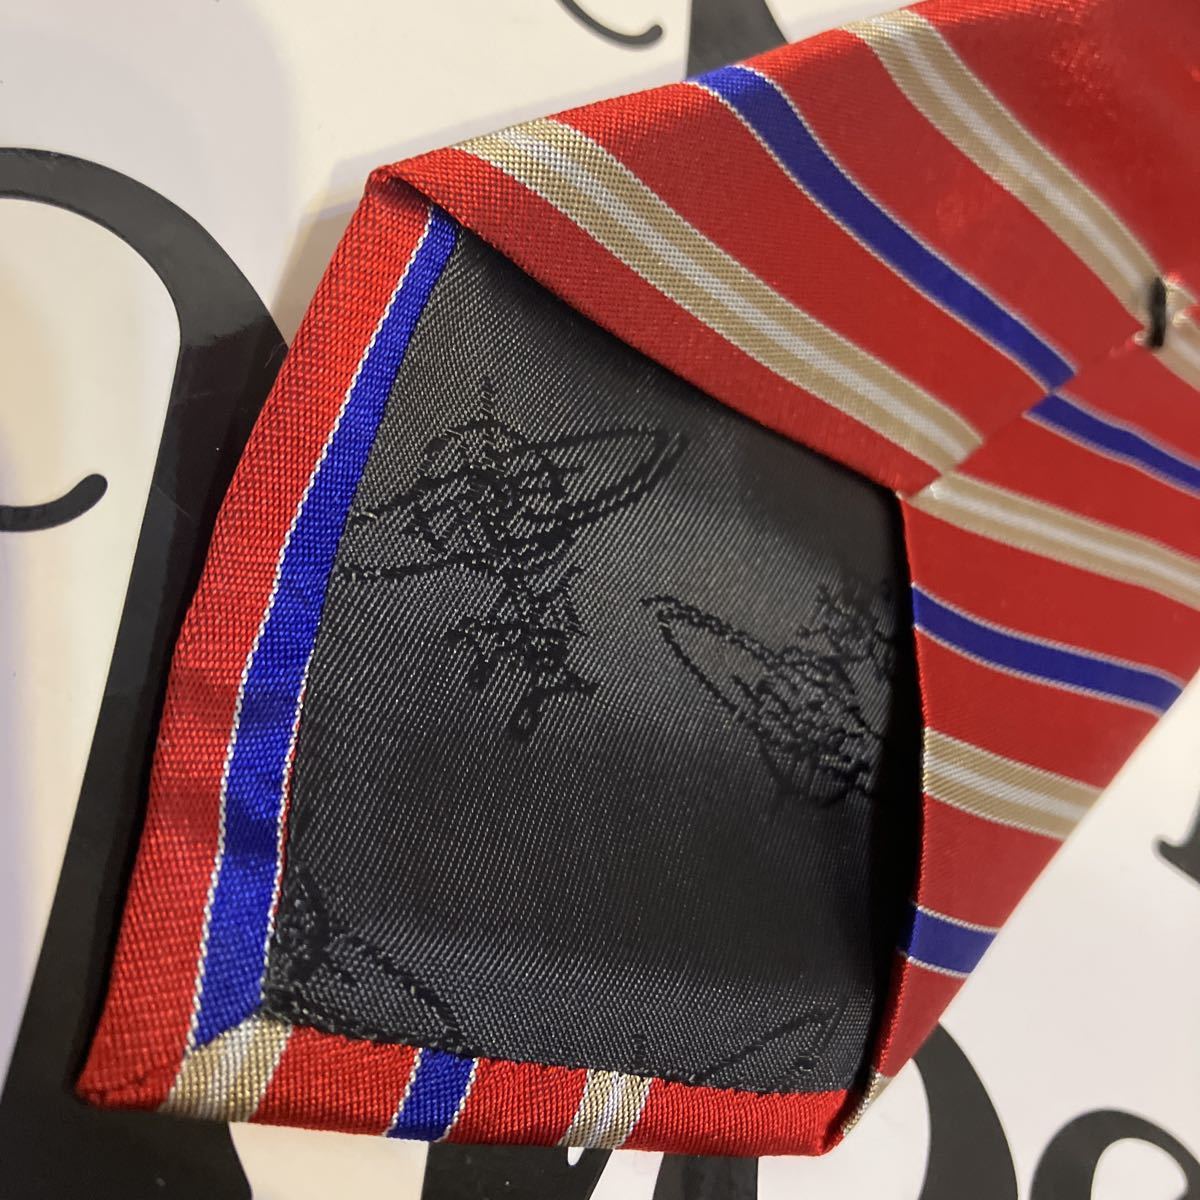  включая доставку * новый товар * стоимость 19800 иен Vivienne Westwood Италия производства галстук красный синий B шелк 100%..8.5. Vivienne Westwood Vivian 